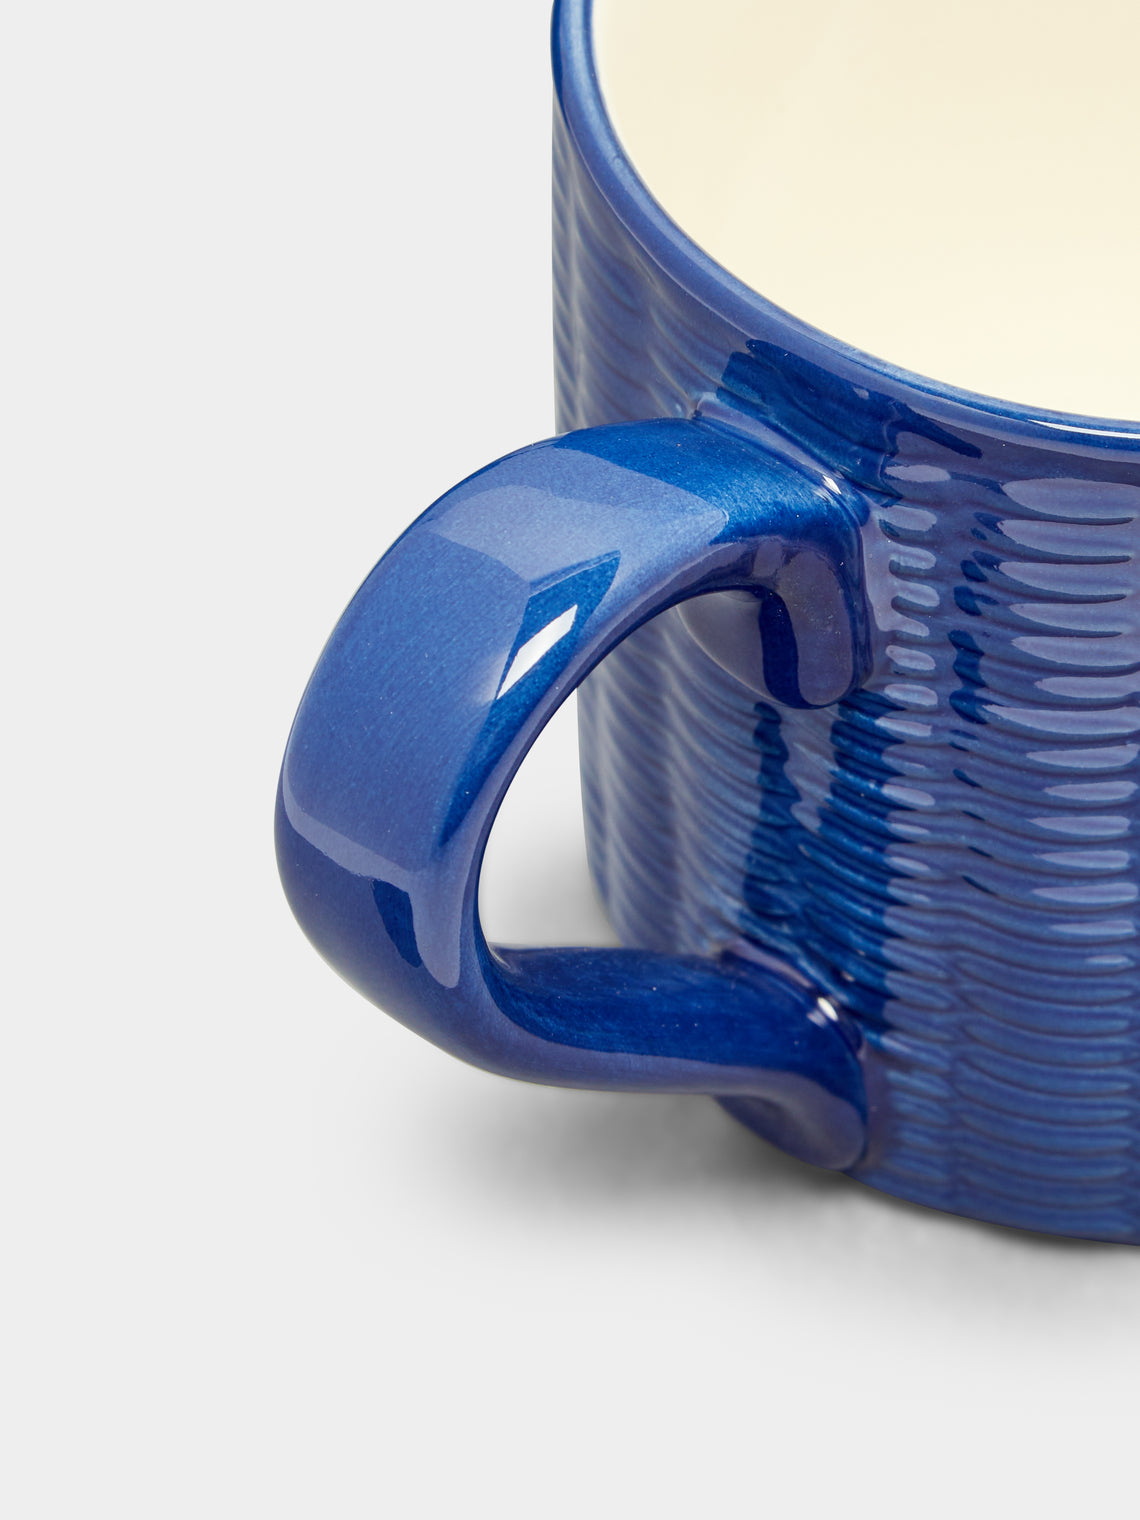 Este Ceramiche - Wicker Hand-Painted Ceramic Mugs (Set of 4) -  - ABASK